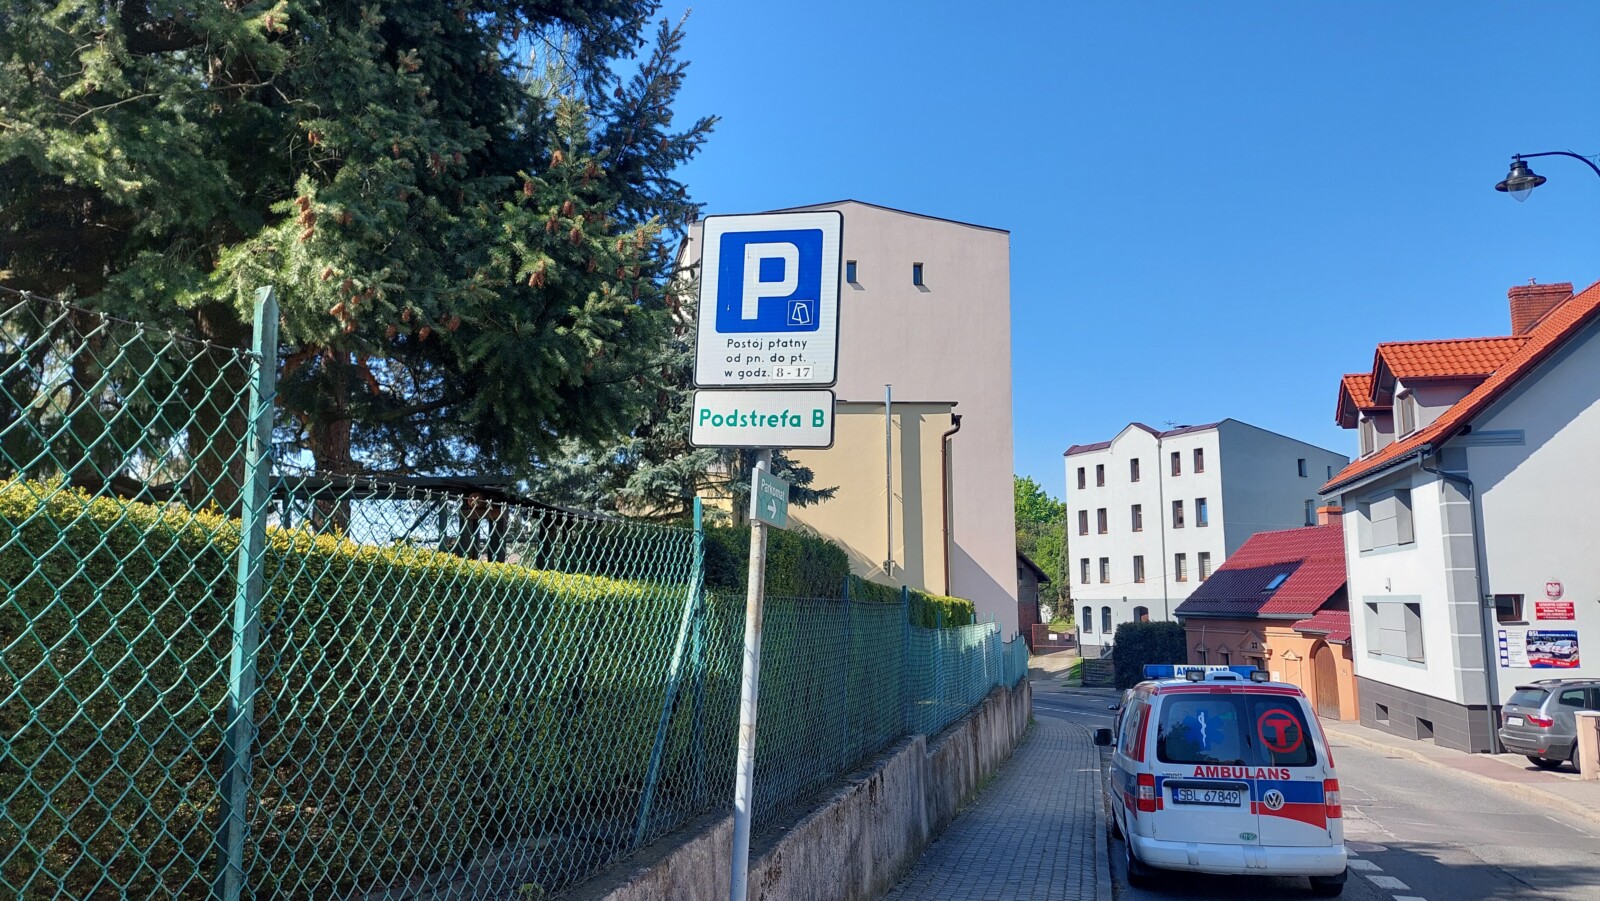 Prywatne karetki w płatnej strefie parkowania za darmo w Wodzisławiu Śląskim